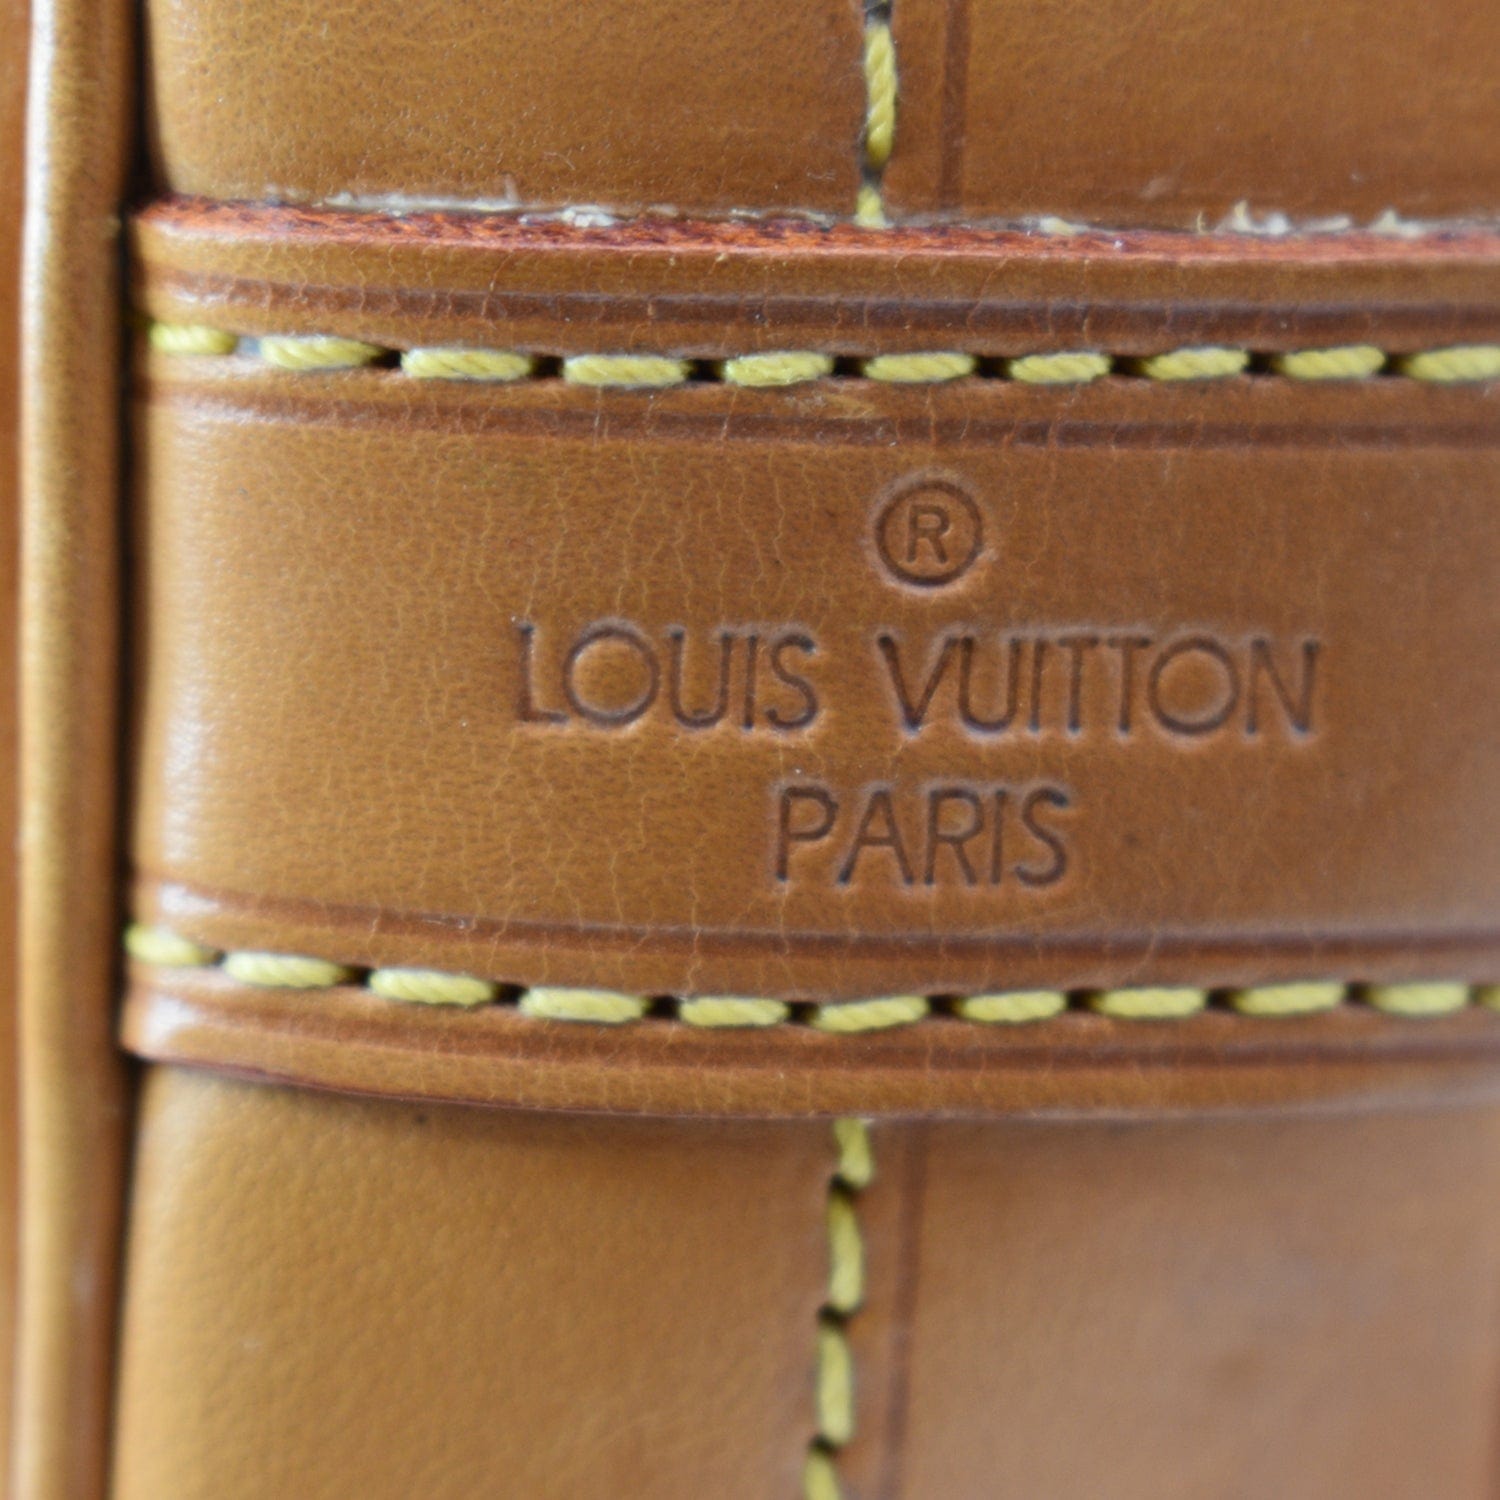 Nano noé cloth crossbody bag Louis Vuitton Brown in Cloth - 34141309